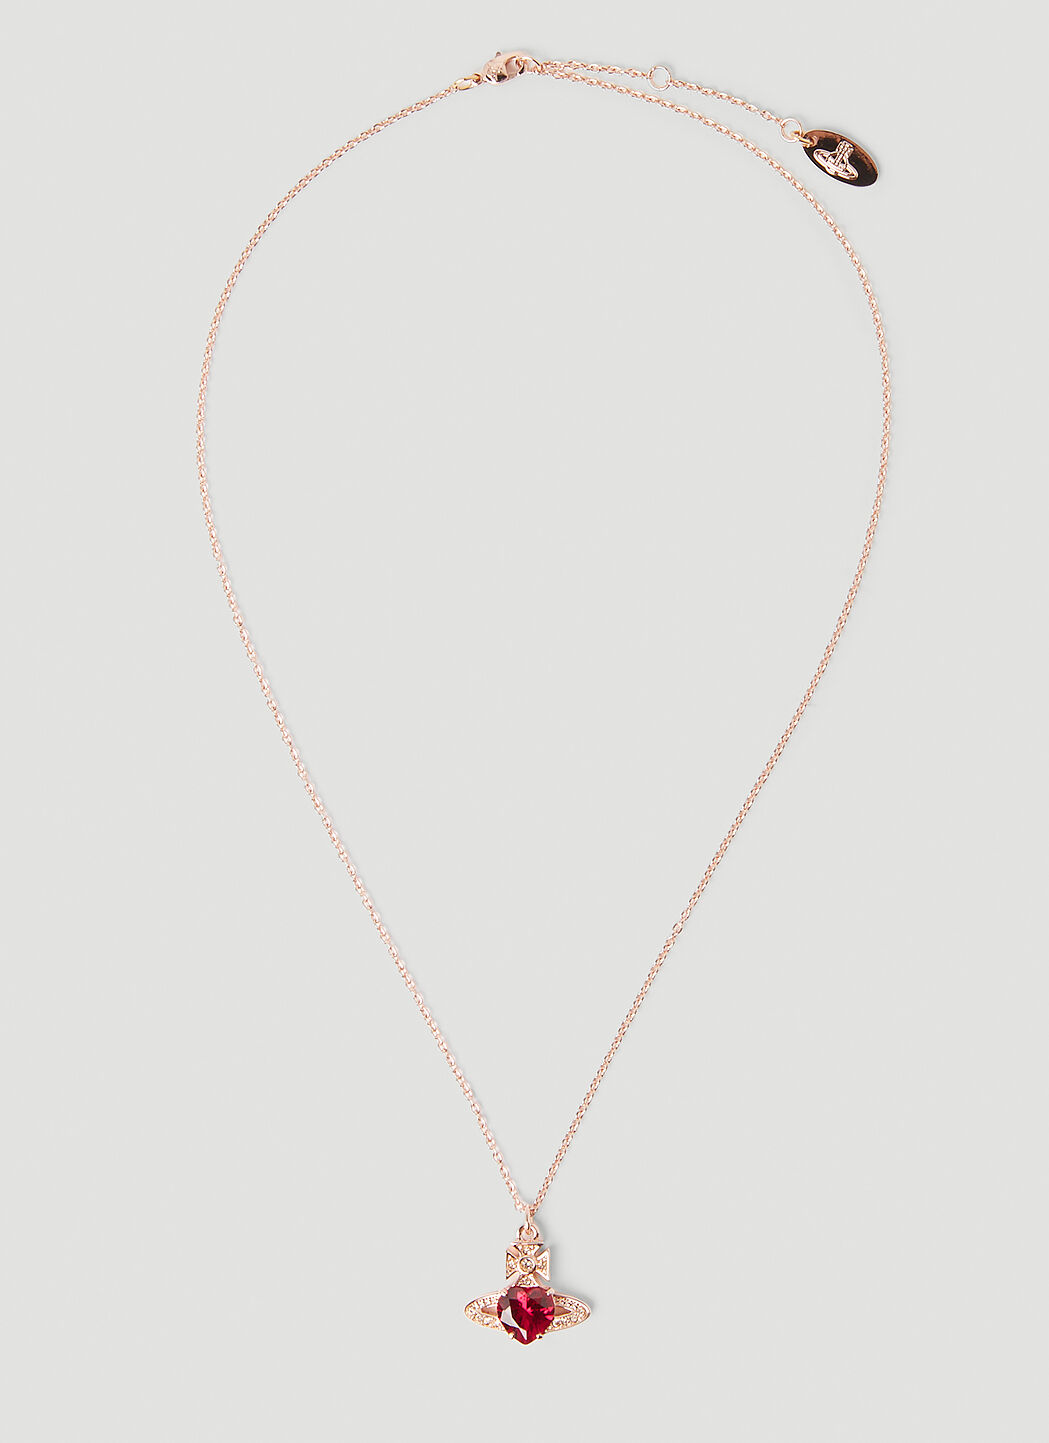 Vivienne Westwood Ariella Pink Crystal Heart Orb Earrings | 0122949 |  Beaverbrooks the Jewellers